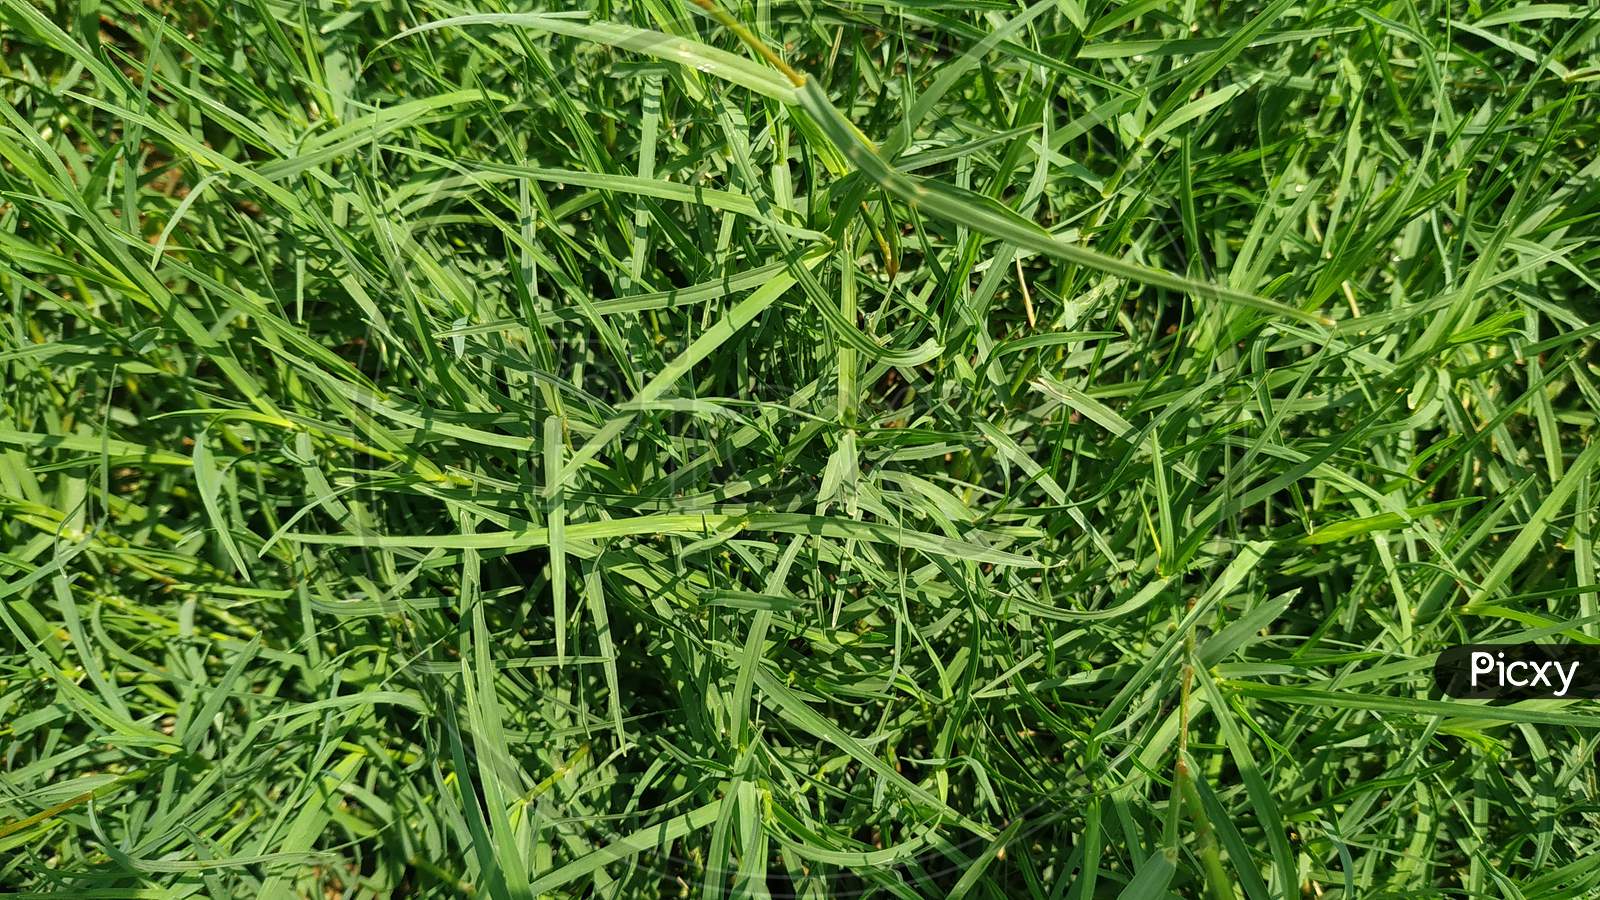 Grass Texture